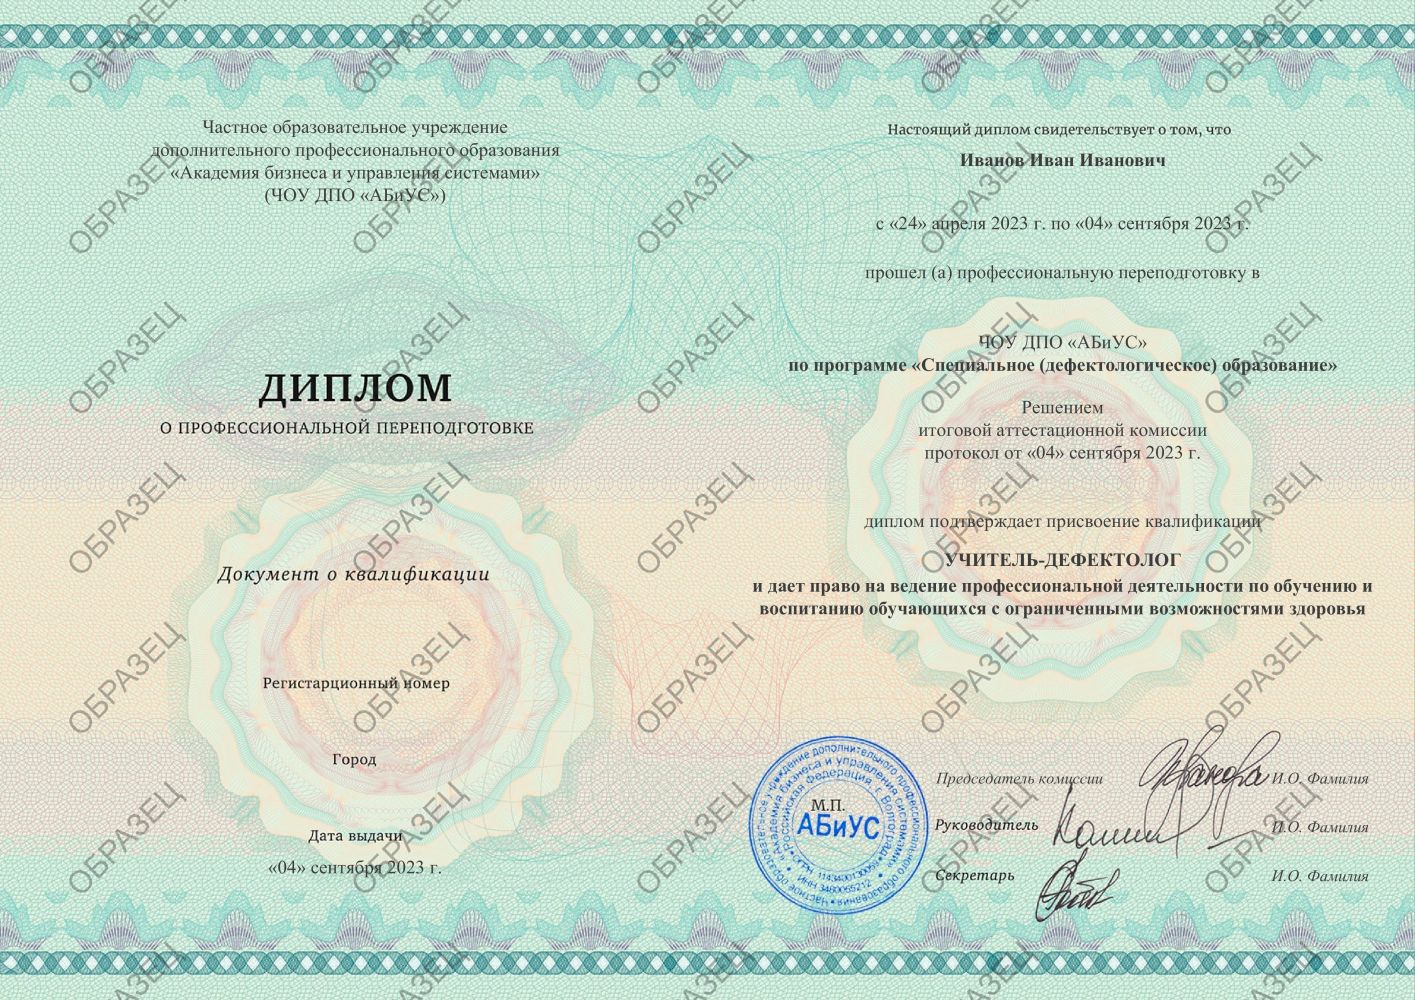 Диплом Специальное (дефектологическое) образование 510 часов 11375 руб.